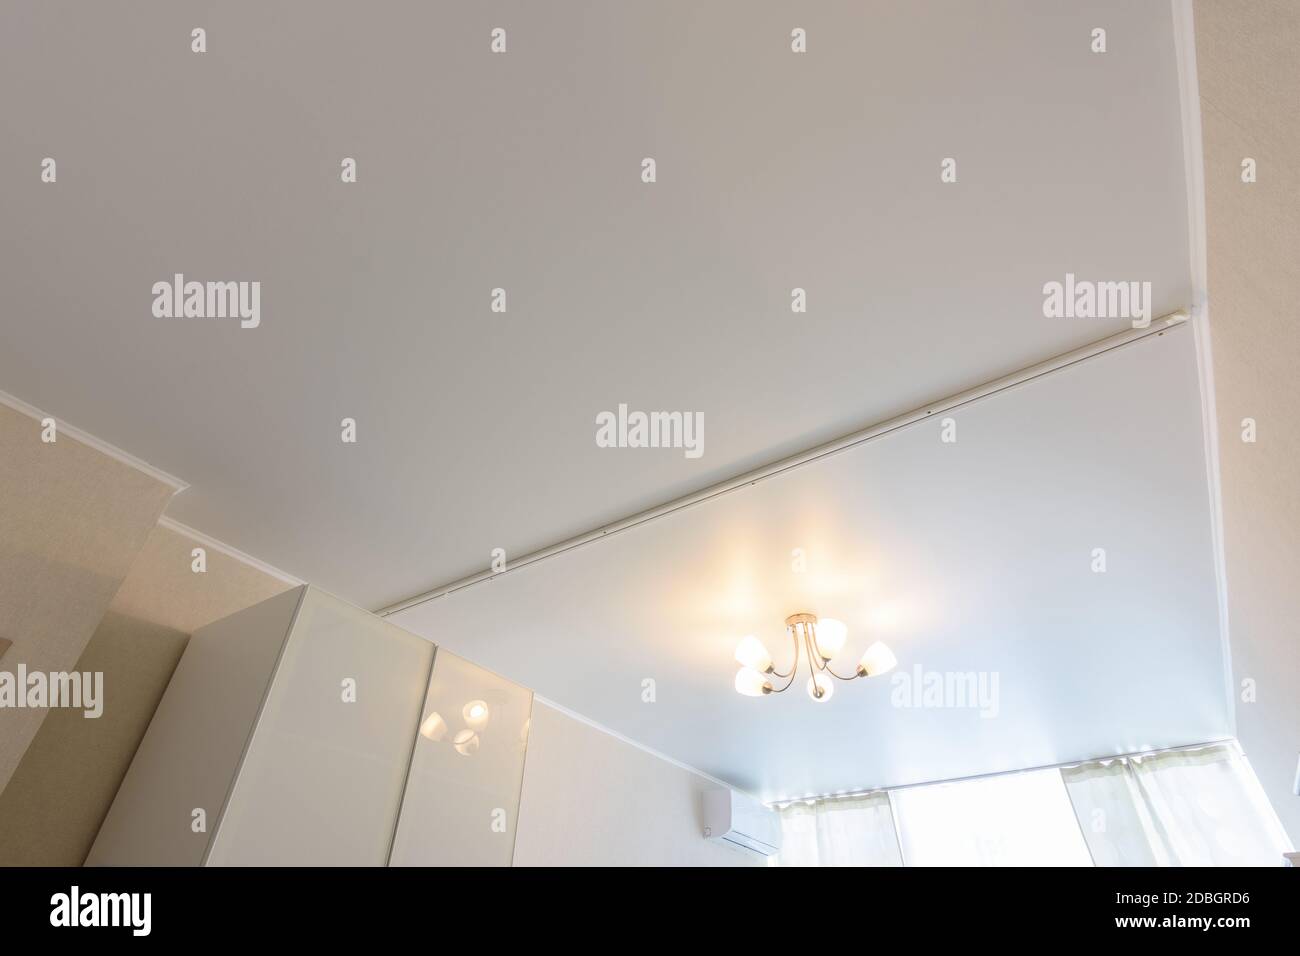 Klassische weiße matte Stretch-Decke mit Trennung für Vorhänge in zwei  Hälften Stockfotografie - Alamy